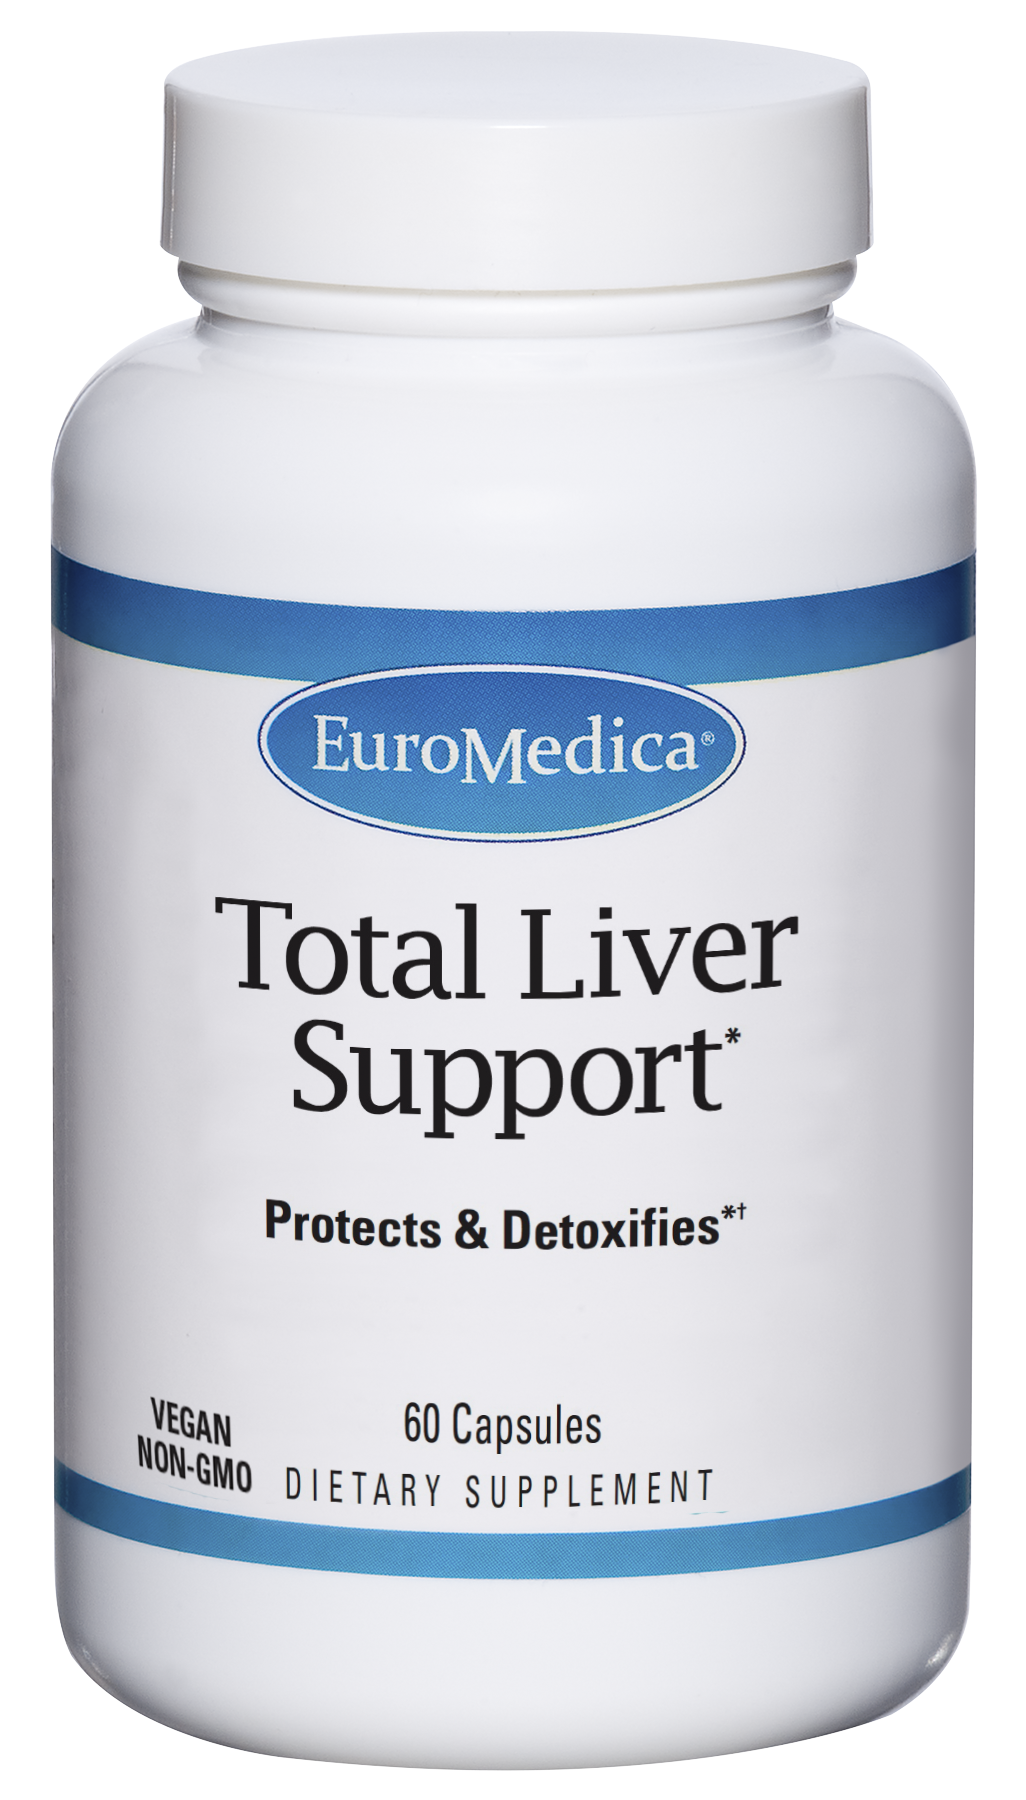 Total Liver Support bottle image